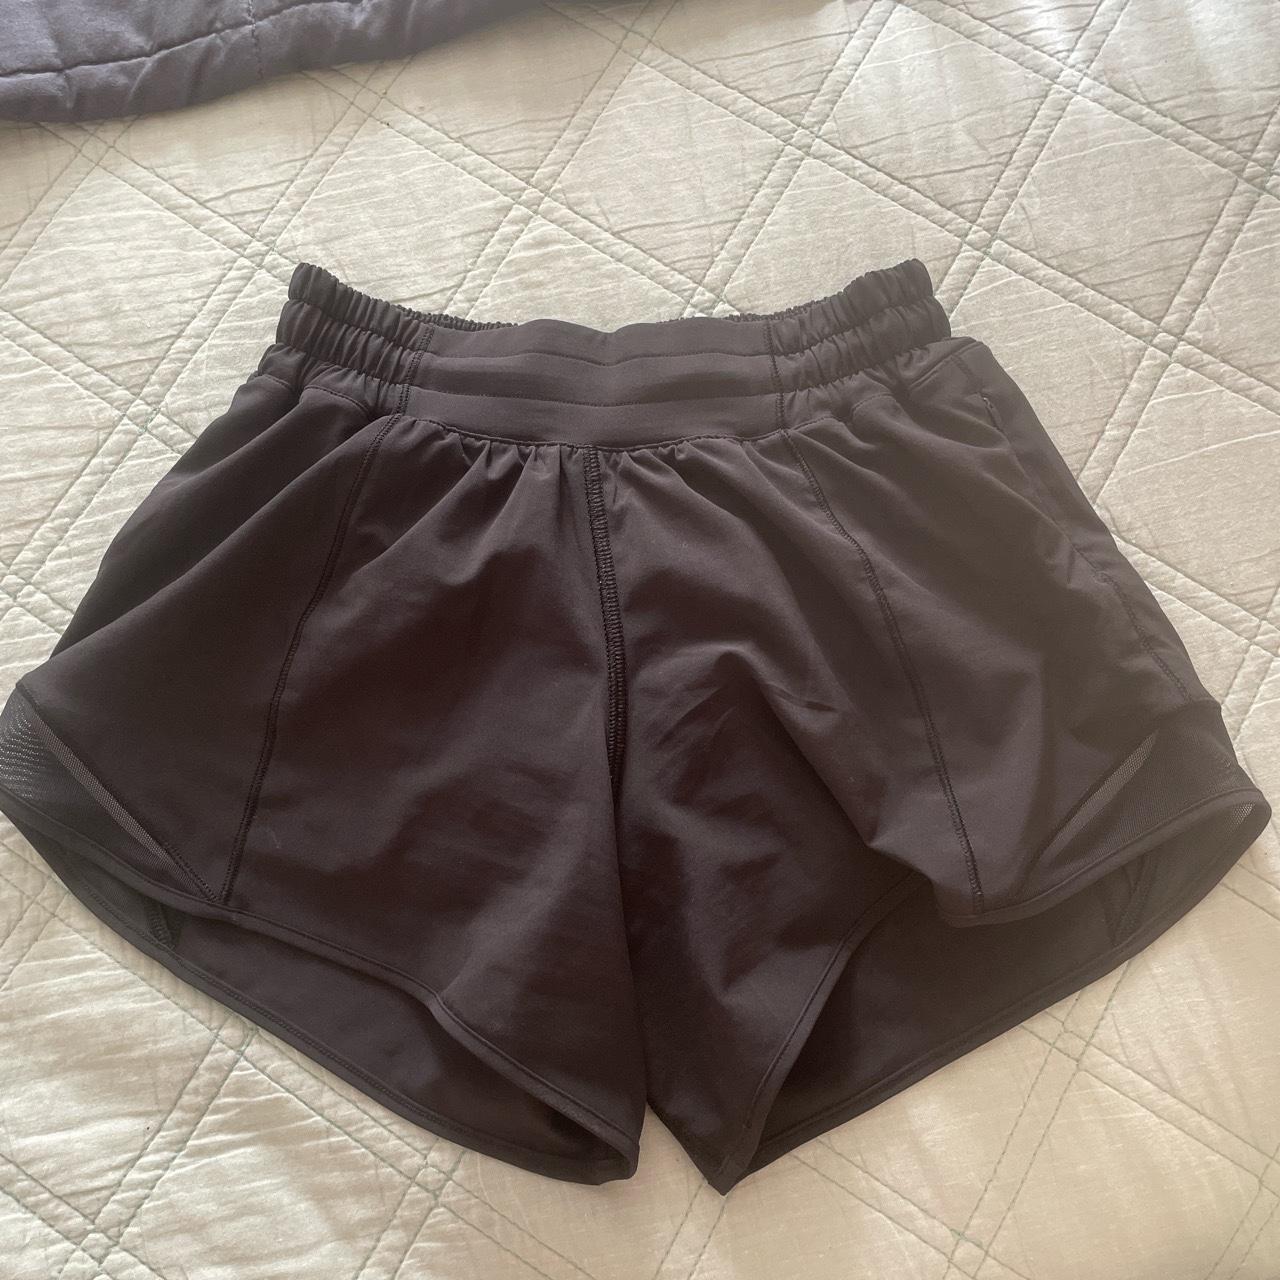 Lululemon black low rise hottie hot shorts size 2 in... - Depop